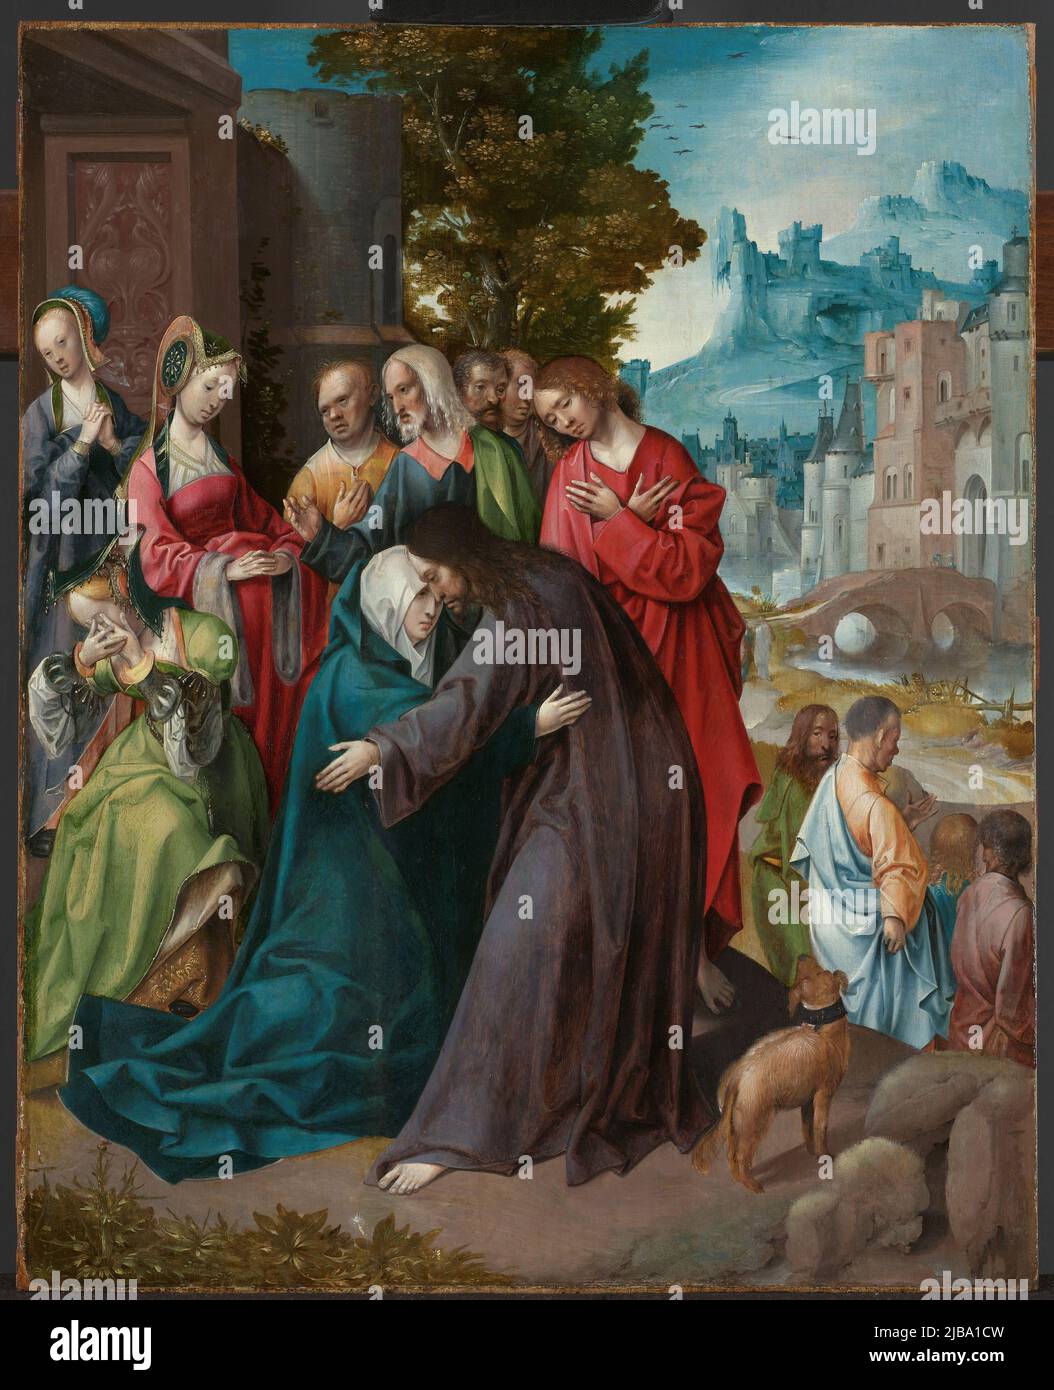 Christus nimmt Abschied von seiner Mutter, Maria. Nach links trauern Frauen. Im Hintergrund wartet eine Reihe von Jüngern Christi Stockfoto